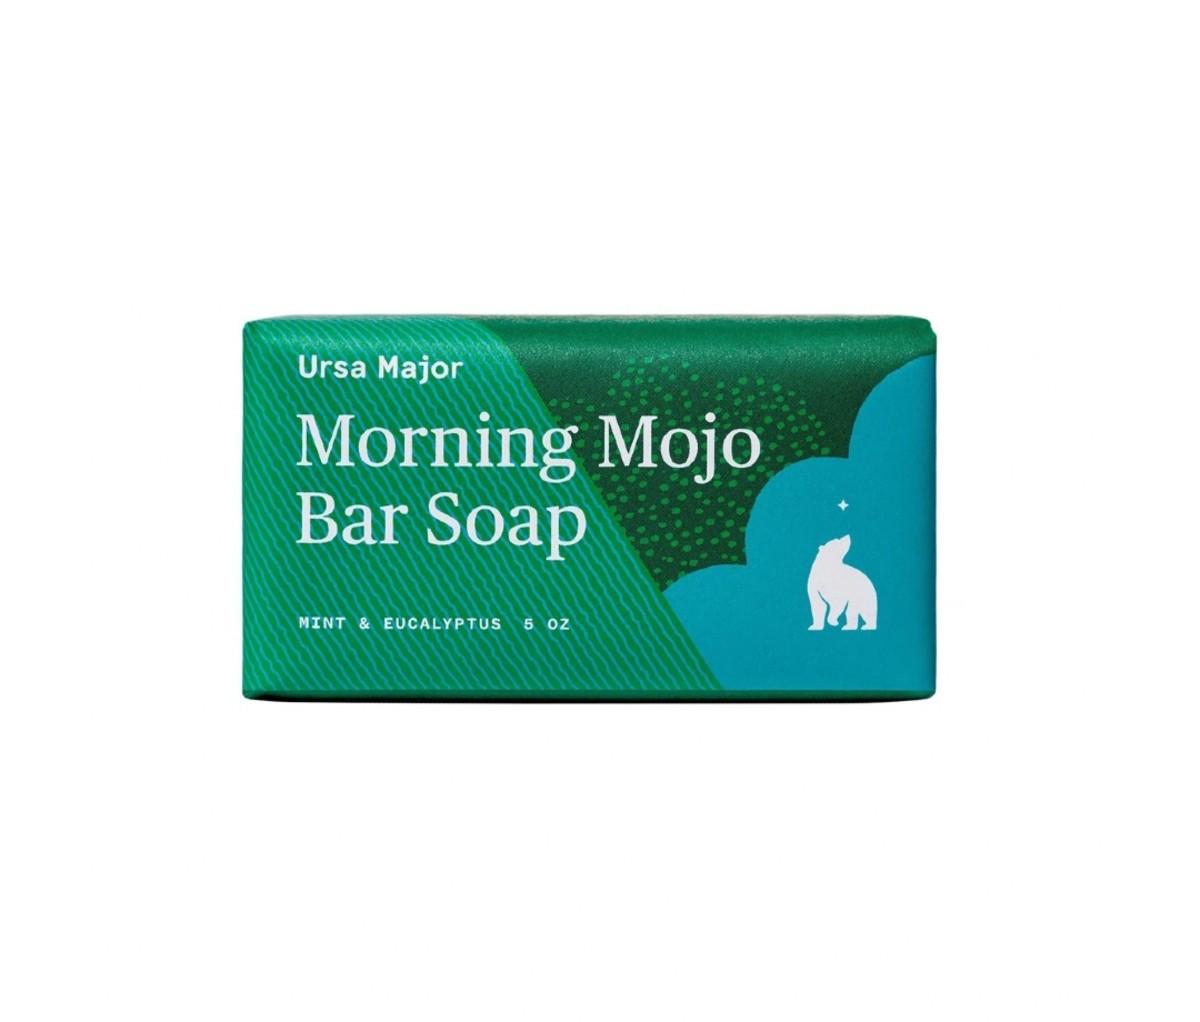 Morning Mojo Bar Soap by Ursa Major